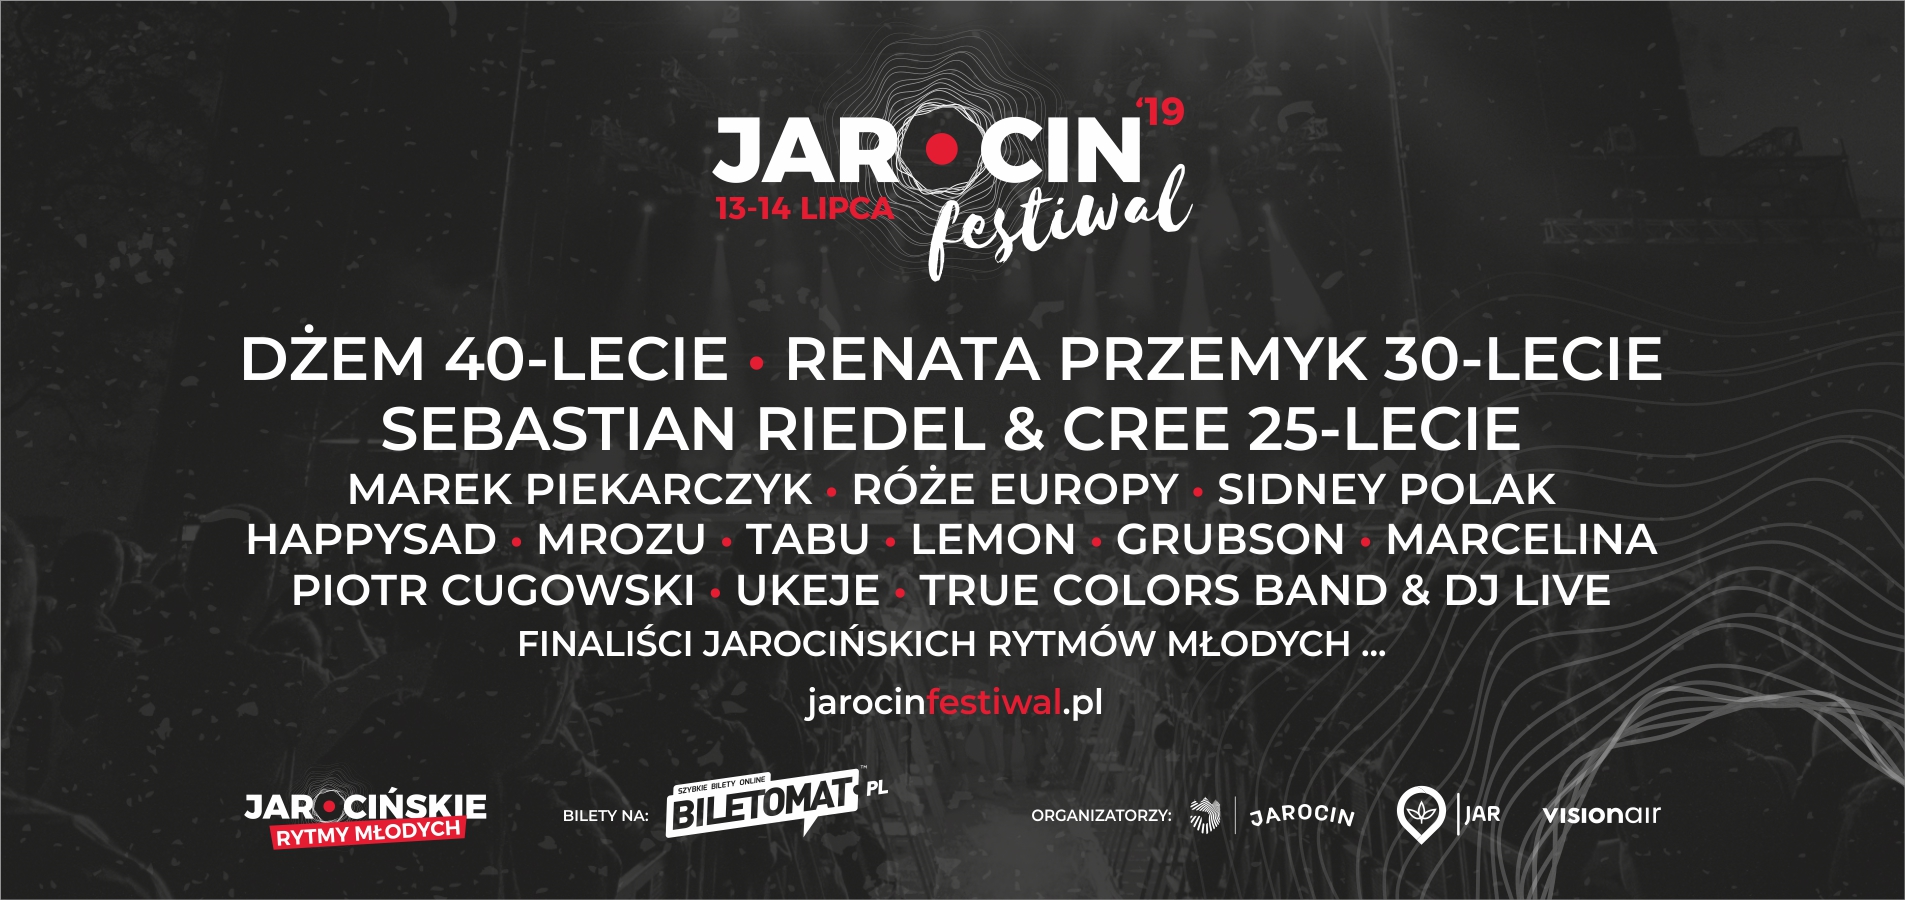 Wiemy kto zagra podczas Jarocin Festiwal 2019